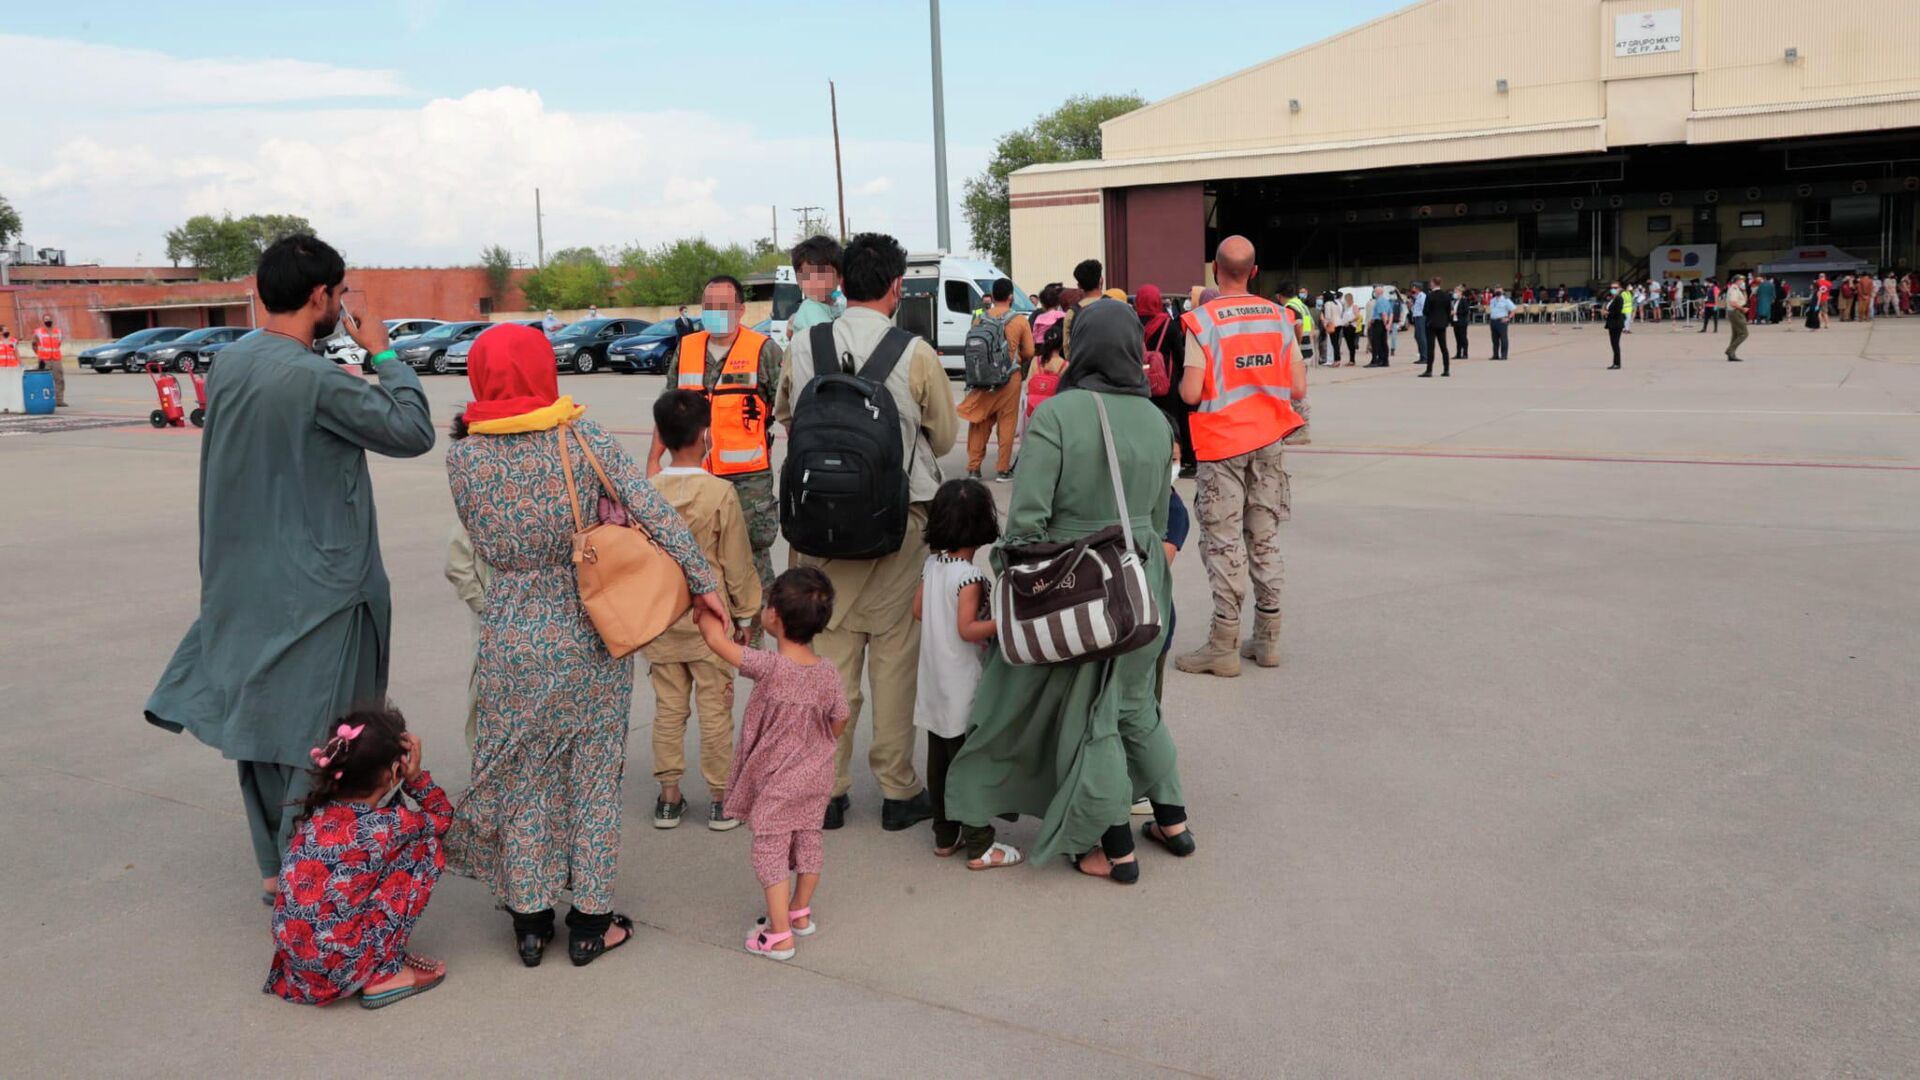 Un total de 292 personas evacuadas desde Afganistán llegan a la Base Aérea de Torrejón, a 25 de agosto de 2021, en Torrejón de Ardoz, Madrid (España) - Sputnik Mundo, 1920, 25.08.2021